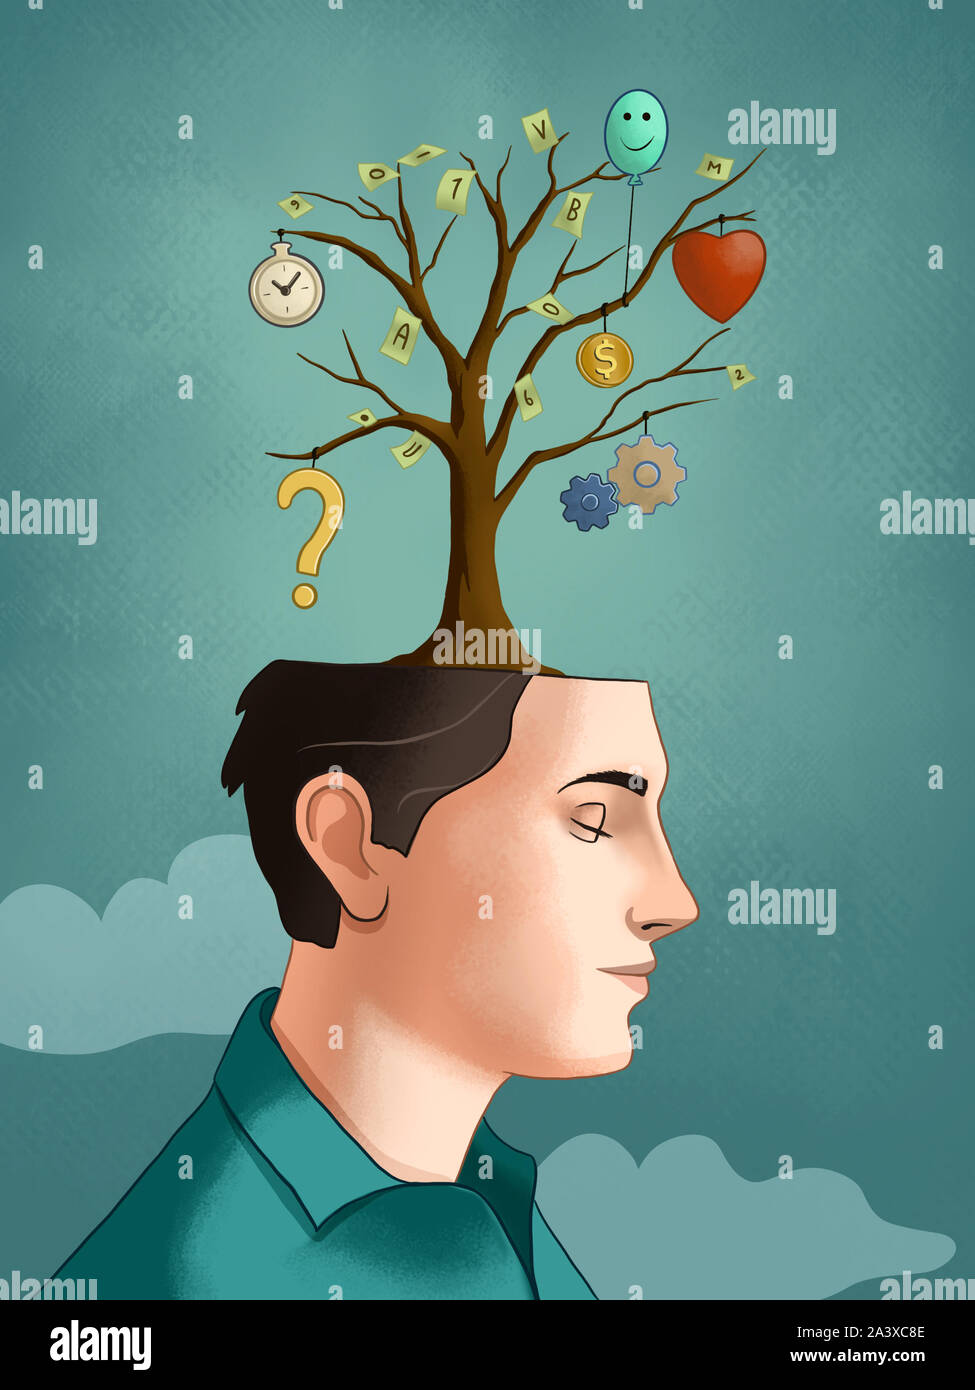 Baum von einem jungen männlichen Kopf, mit unterschiedlichen Gedanken entwickeln, aus jeder Branche. Digitale Illustration. Stockfoto